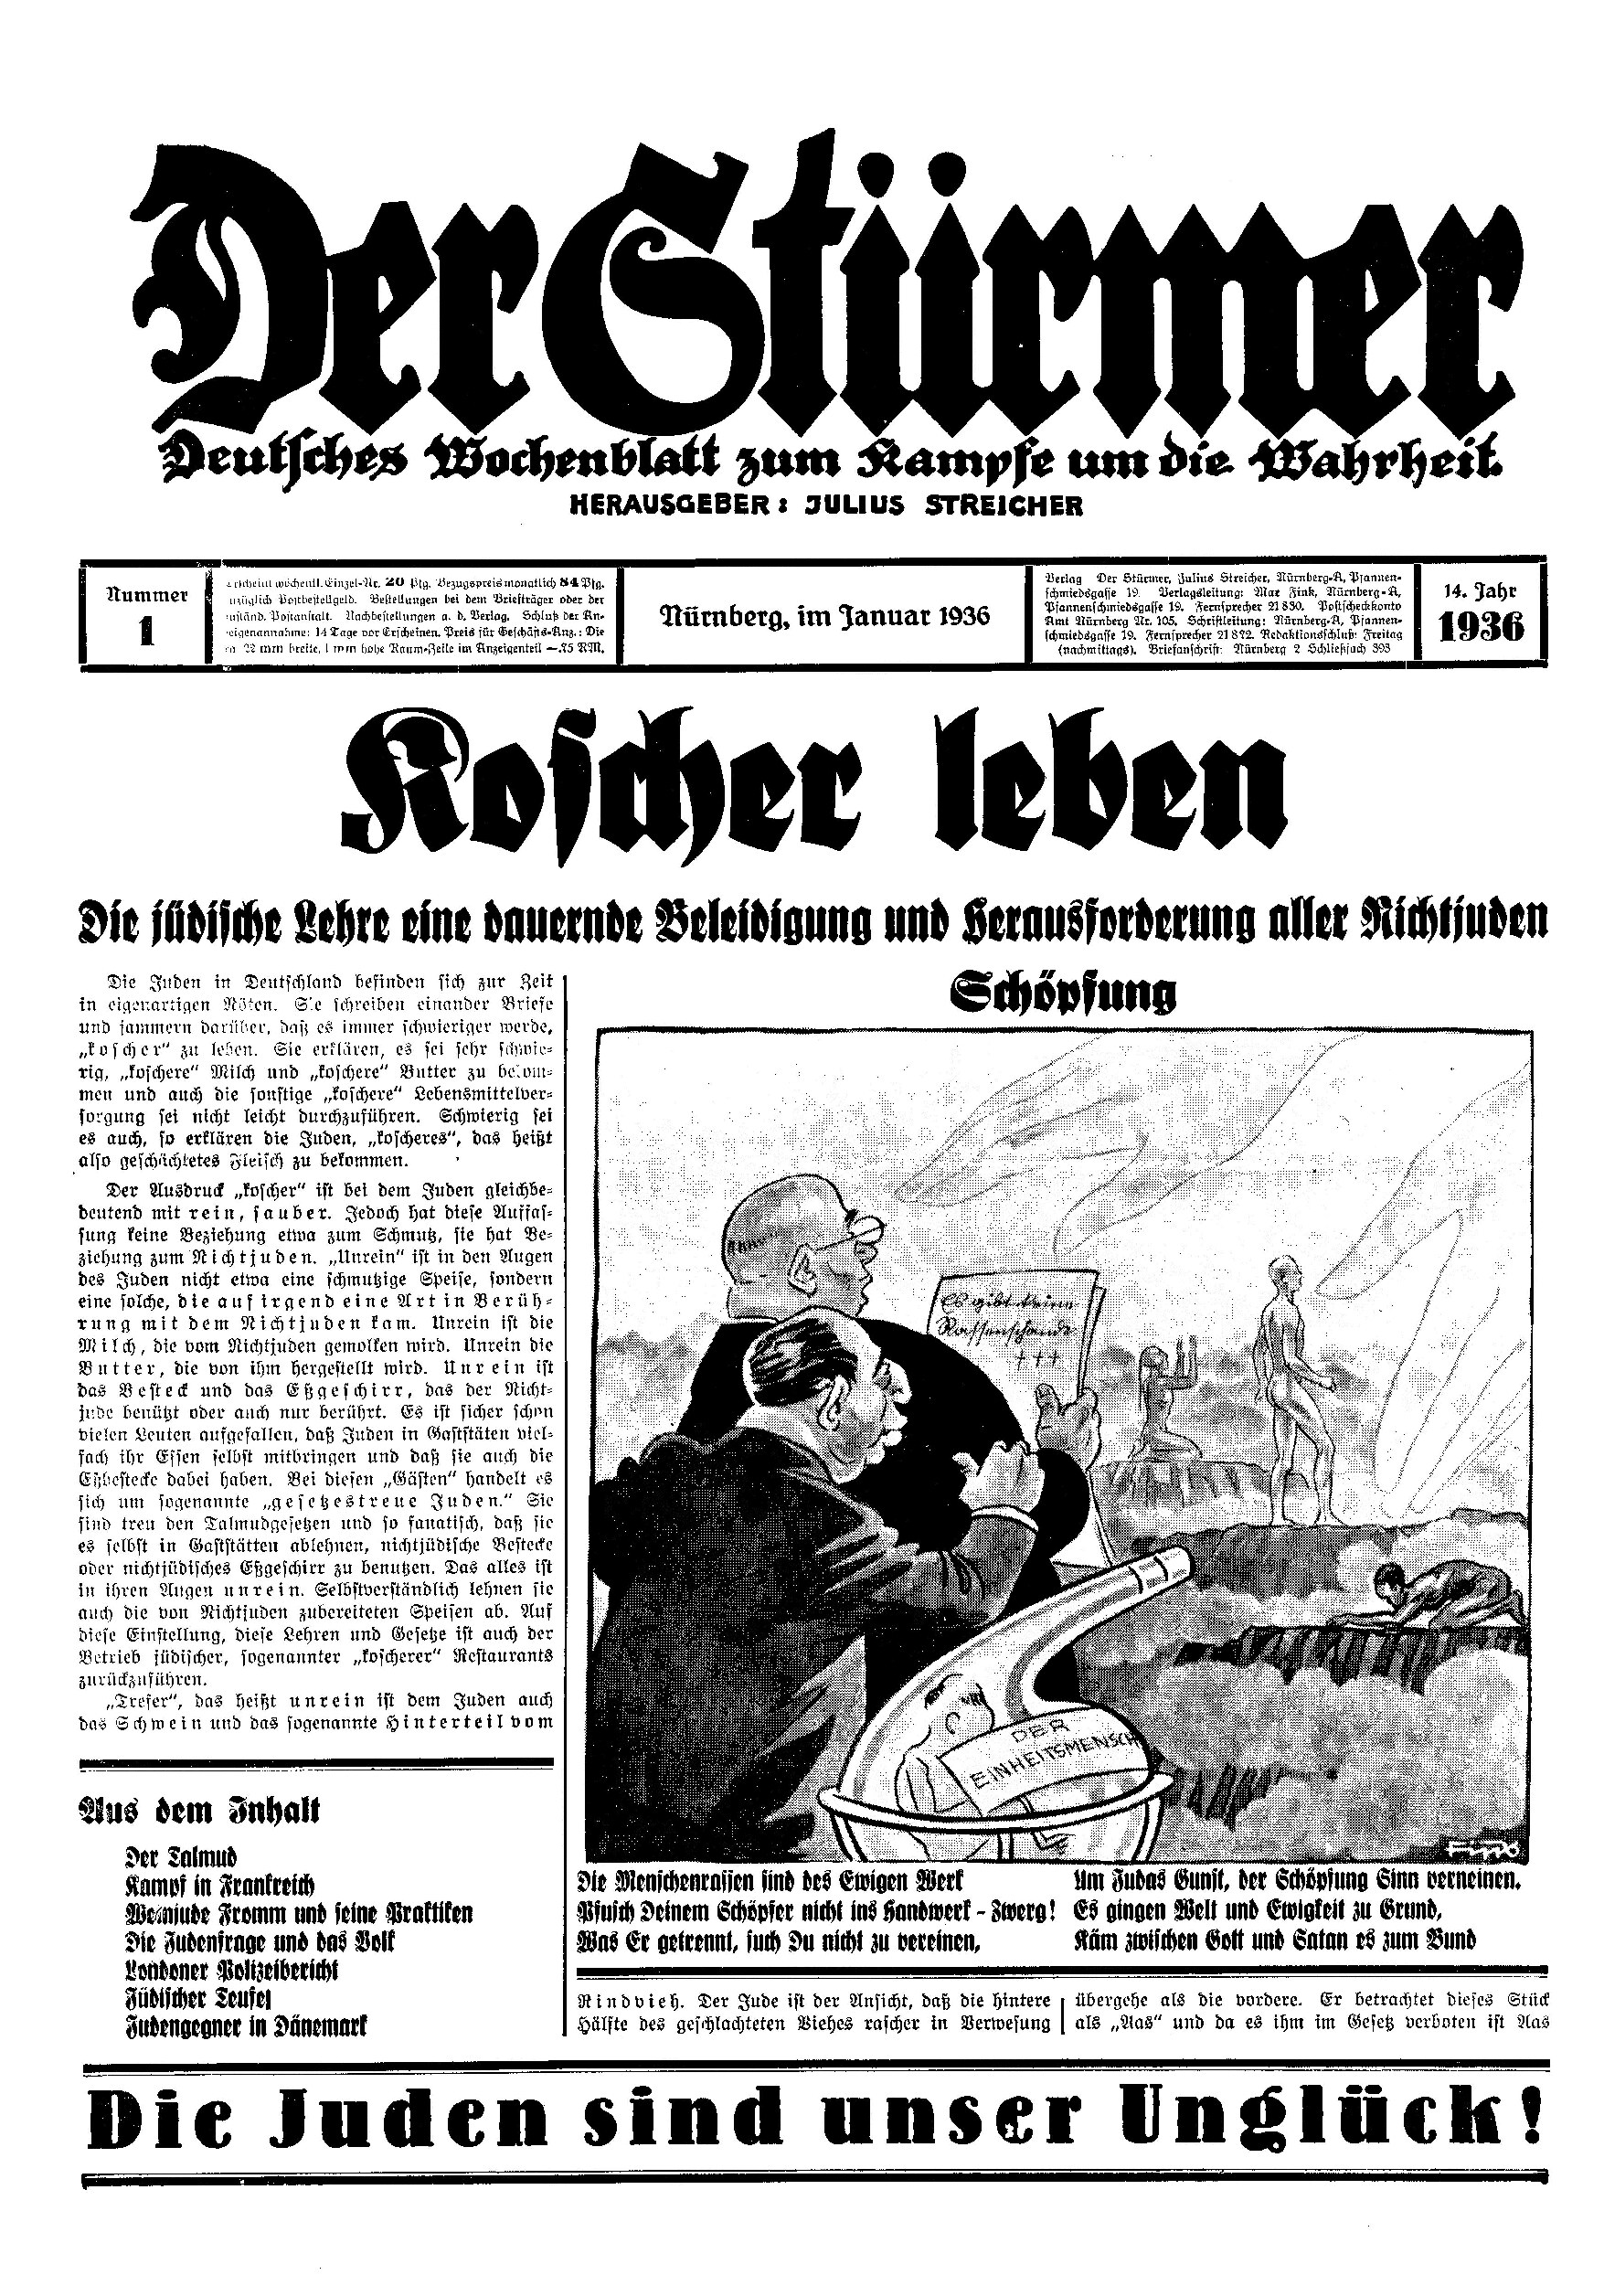 Der Stürmer - 1936 Nr. 01 - Koscher leben